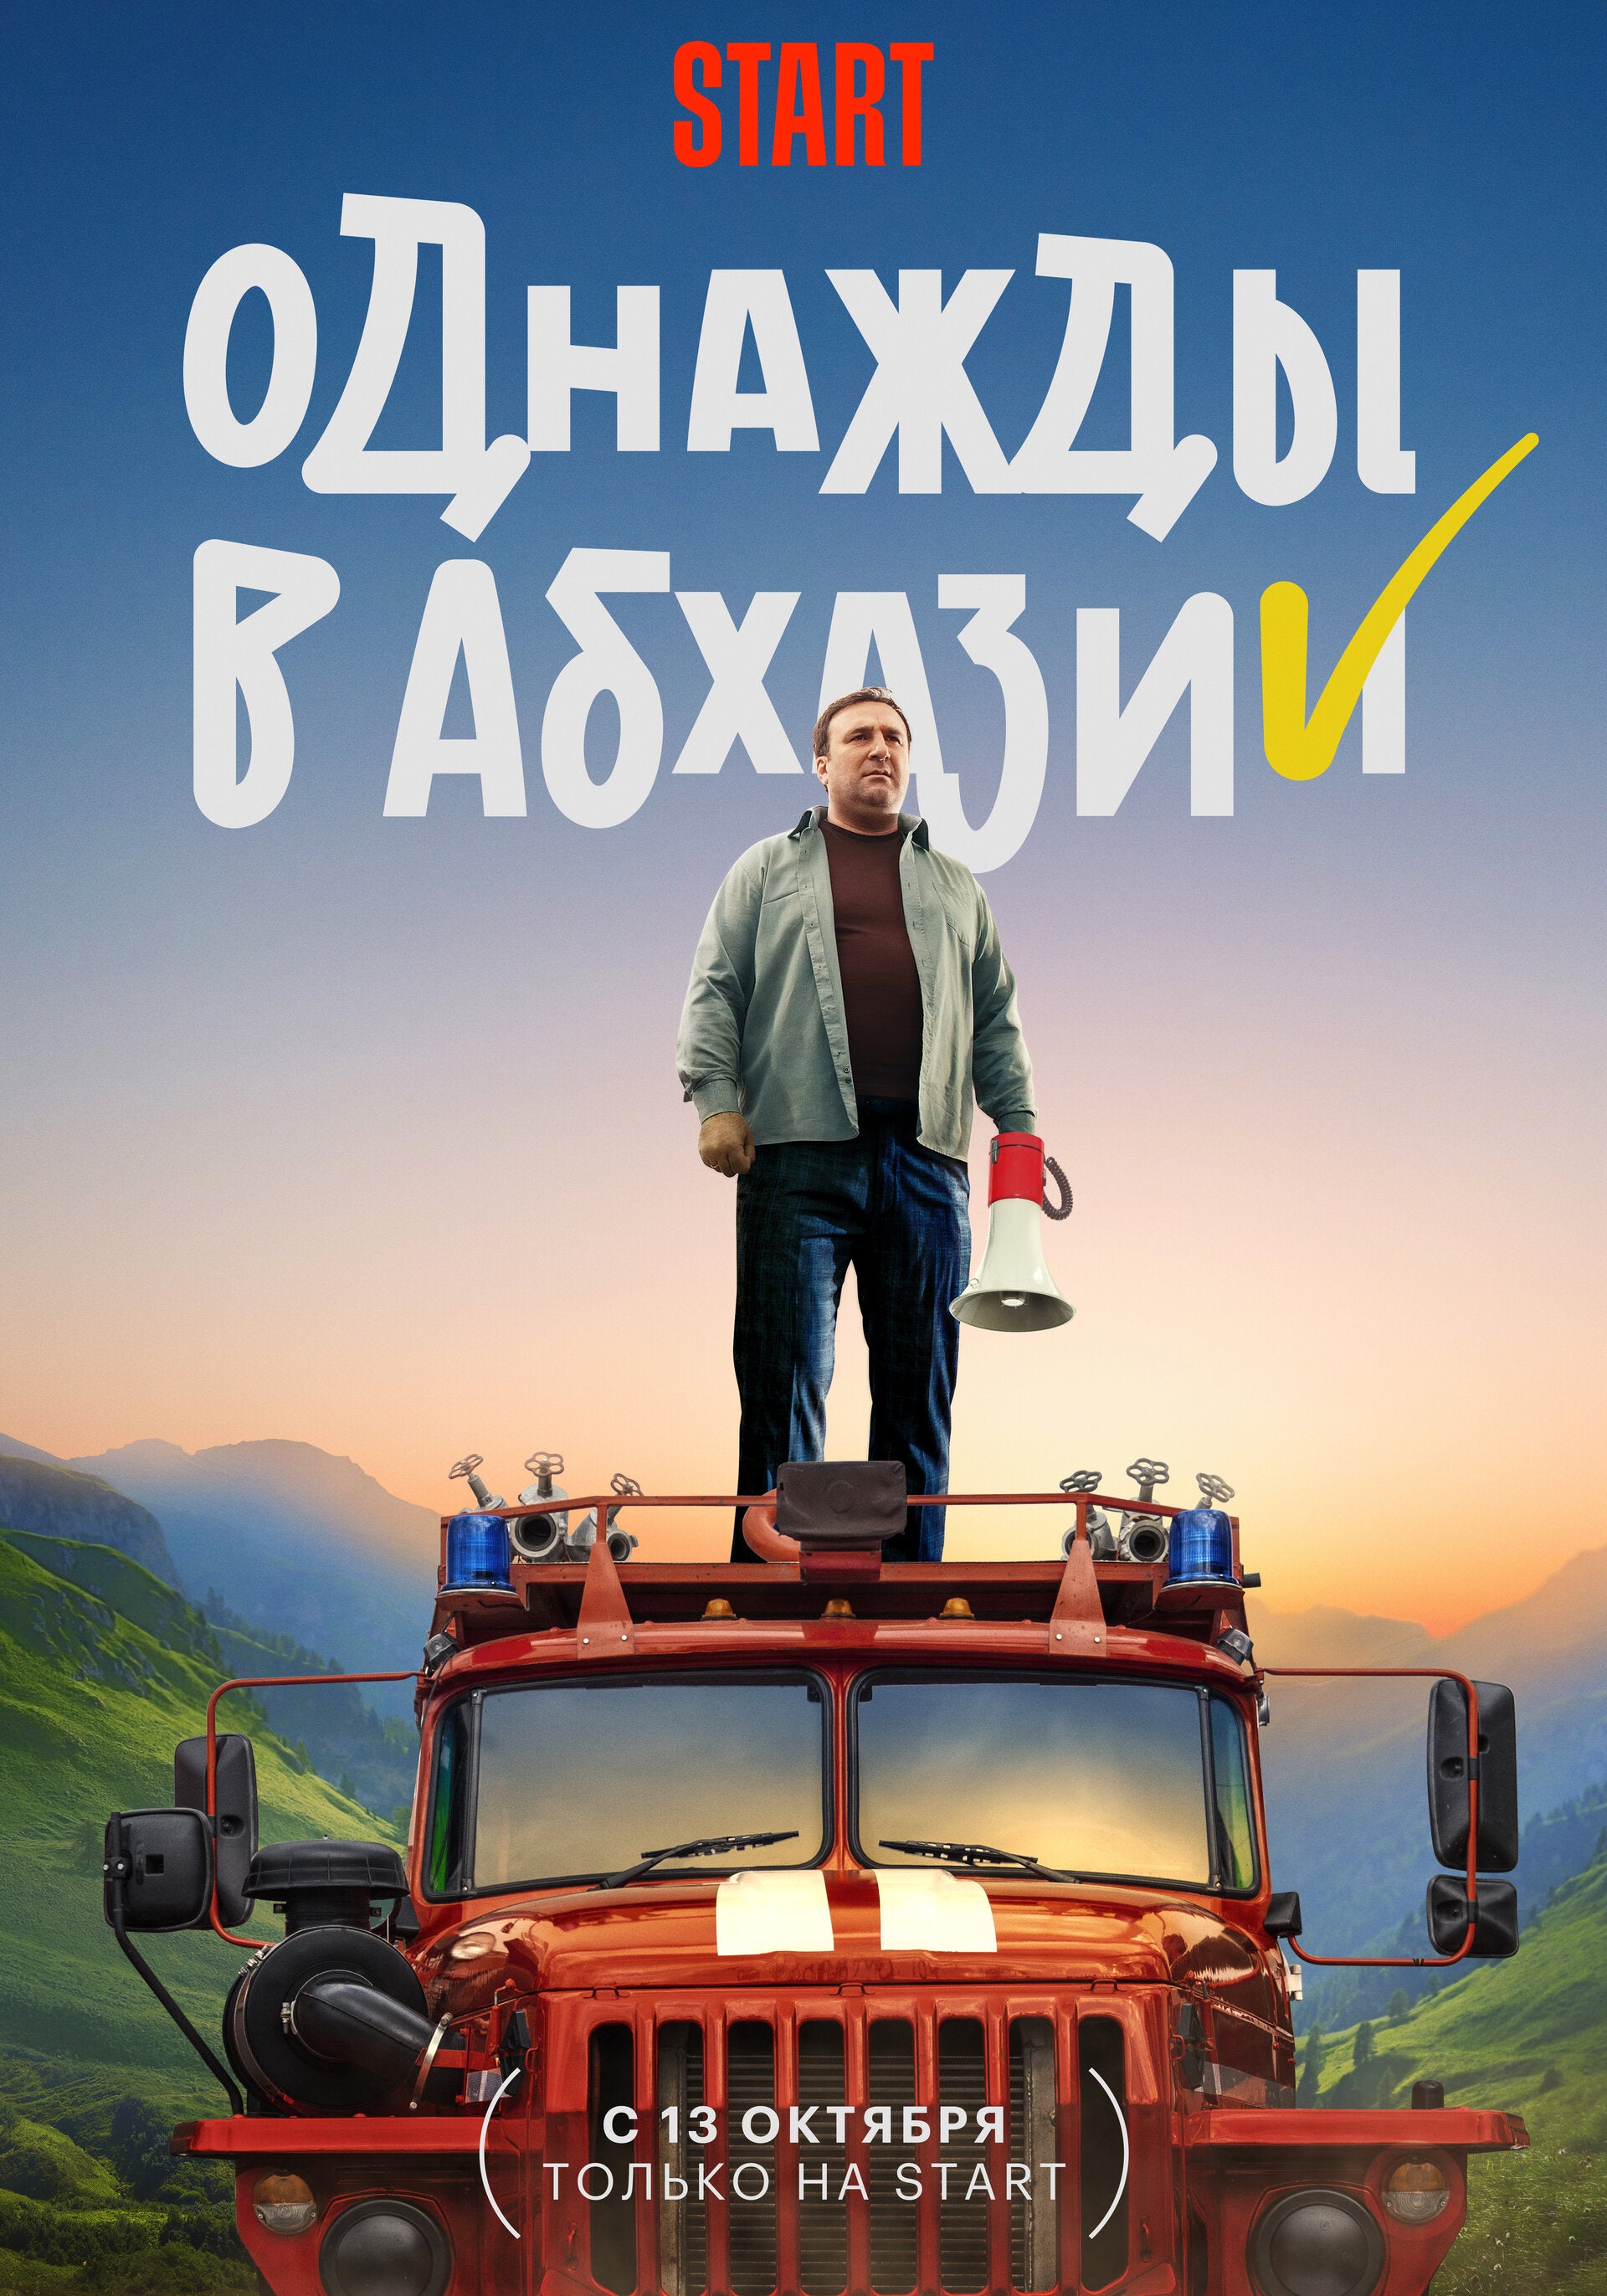 TV ratings for Odnazhdy V Abkhazii (Однажды В Абхазии) in the United States. START TV series